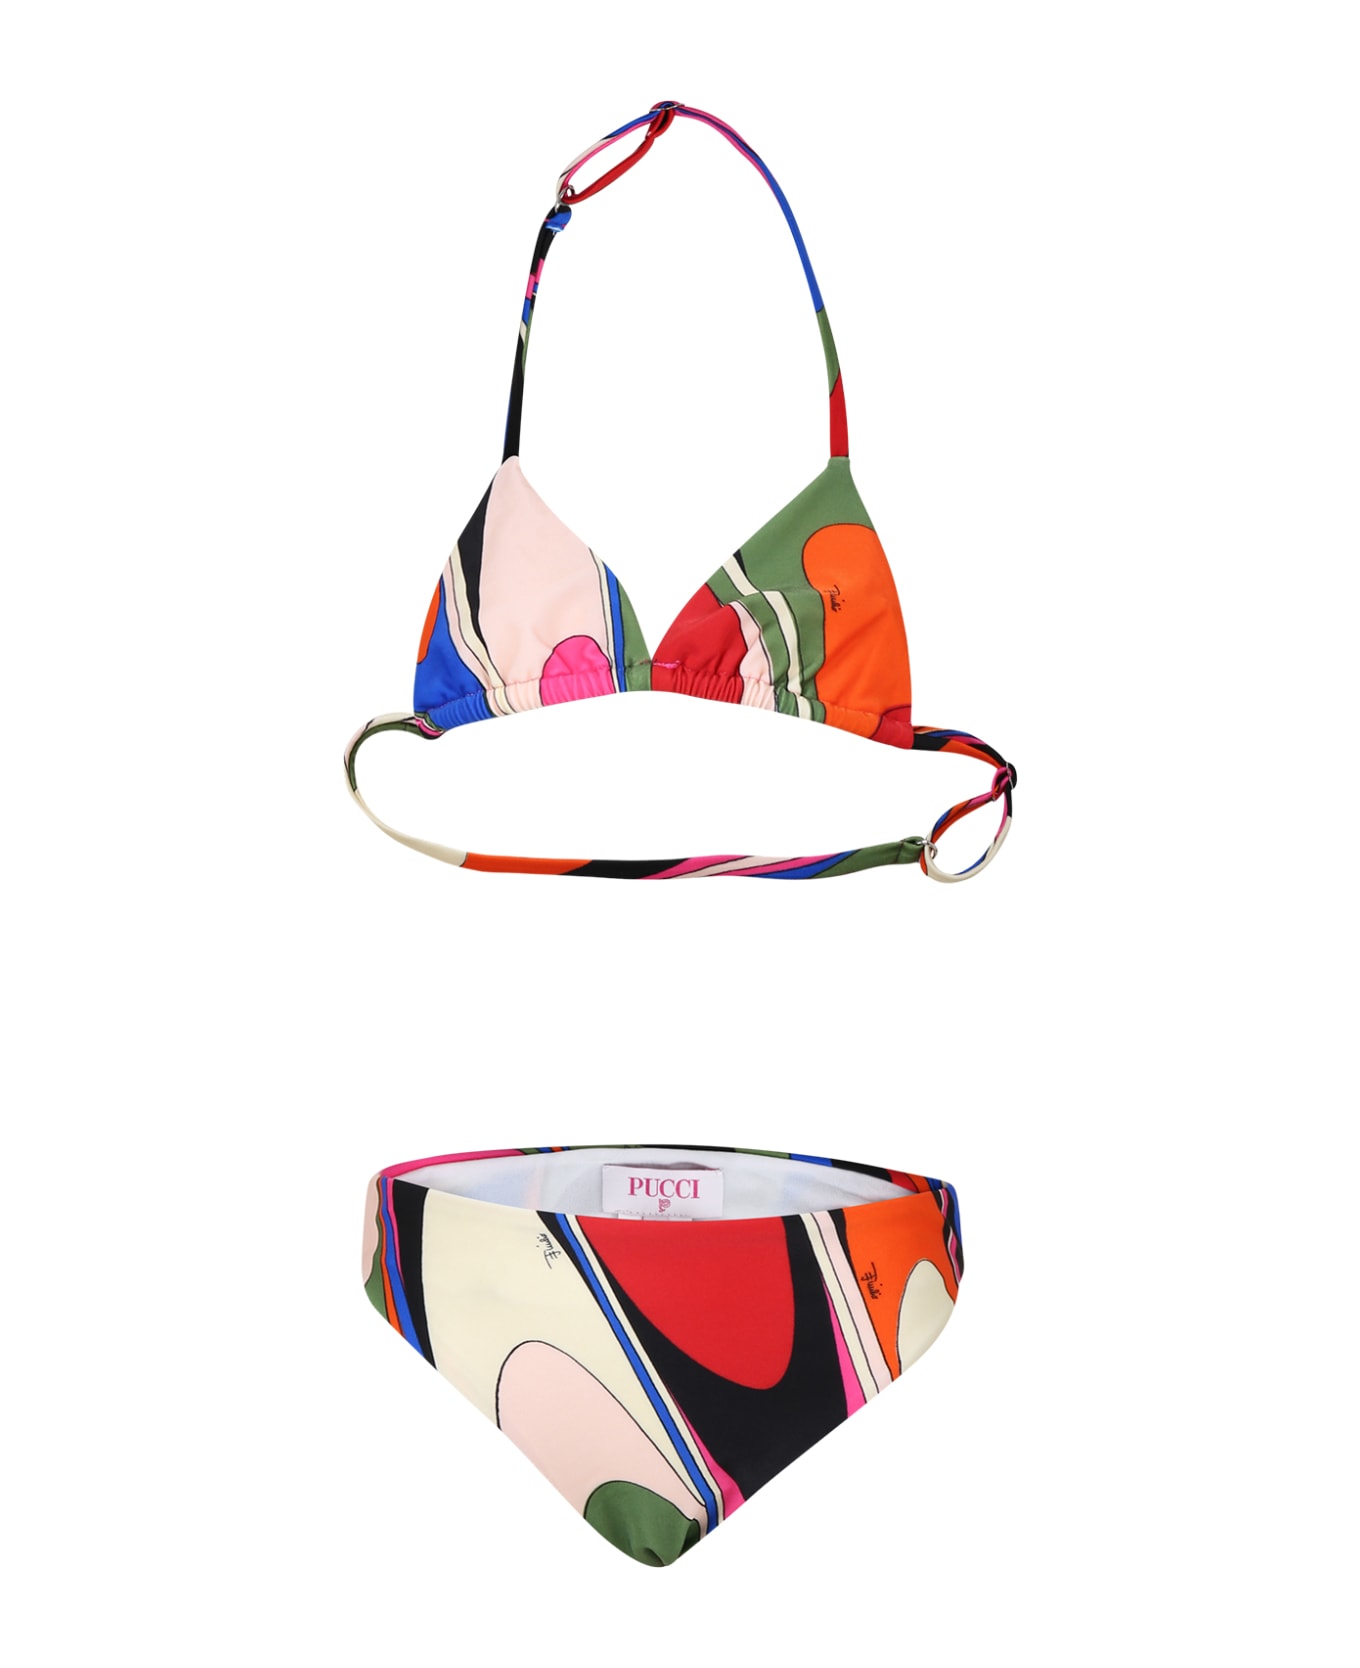 Pucci Multicolor Bikini For Girl With Print And Logo - Multicolor